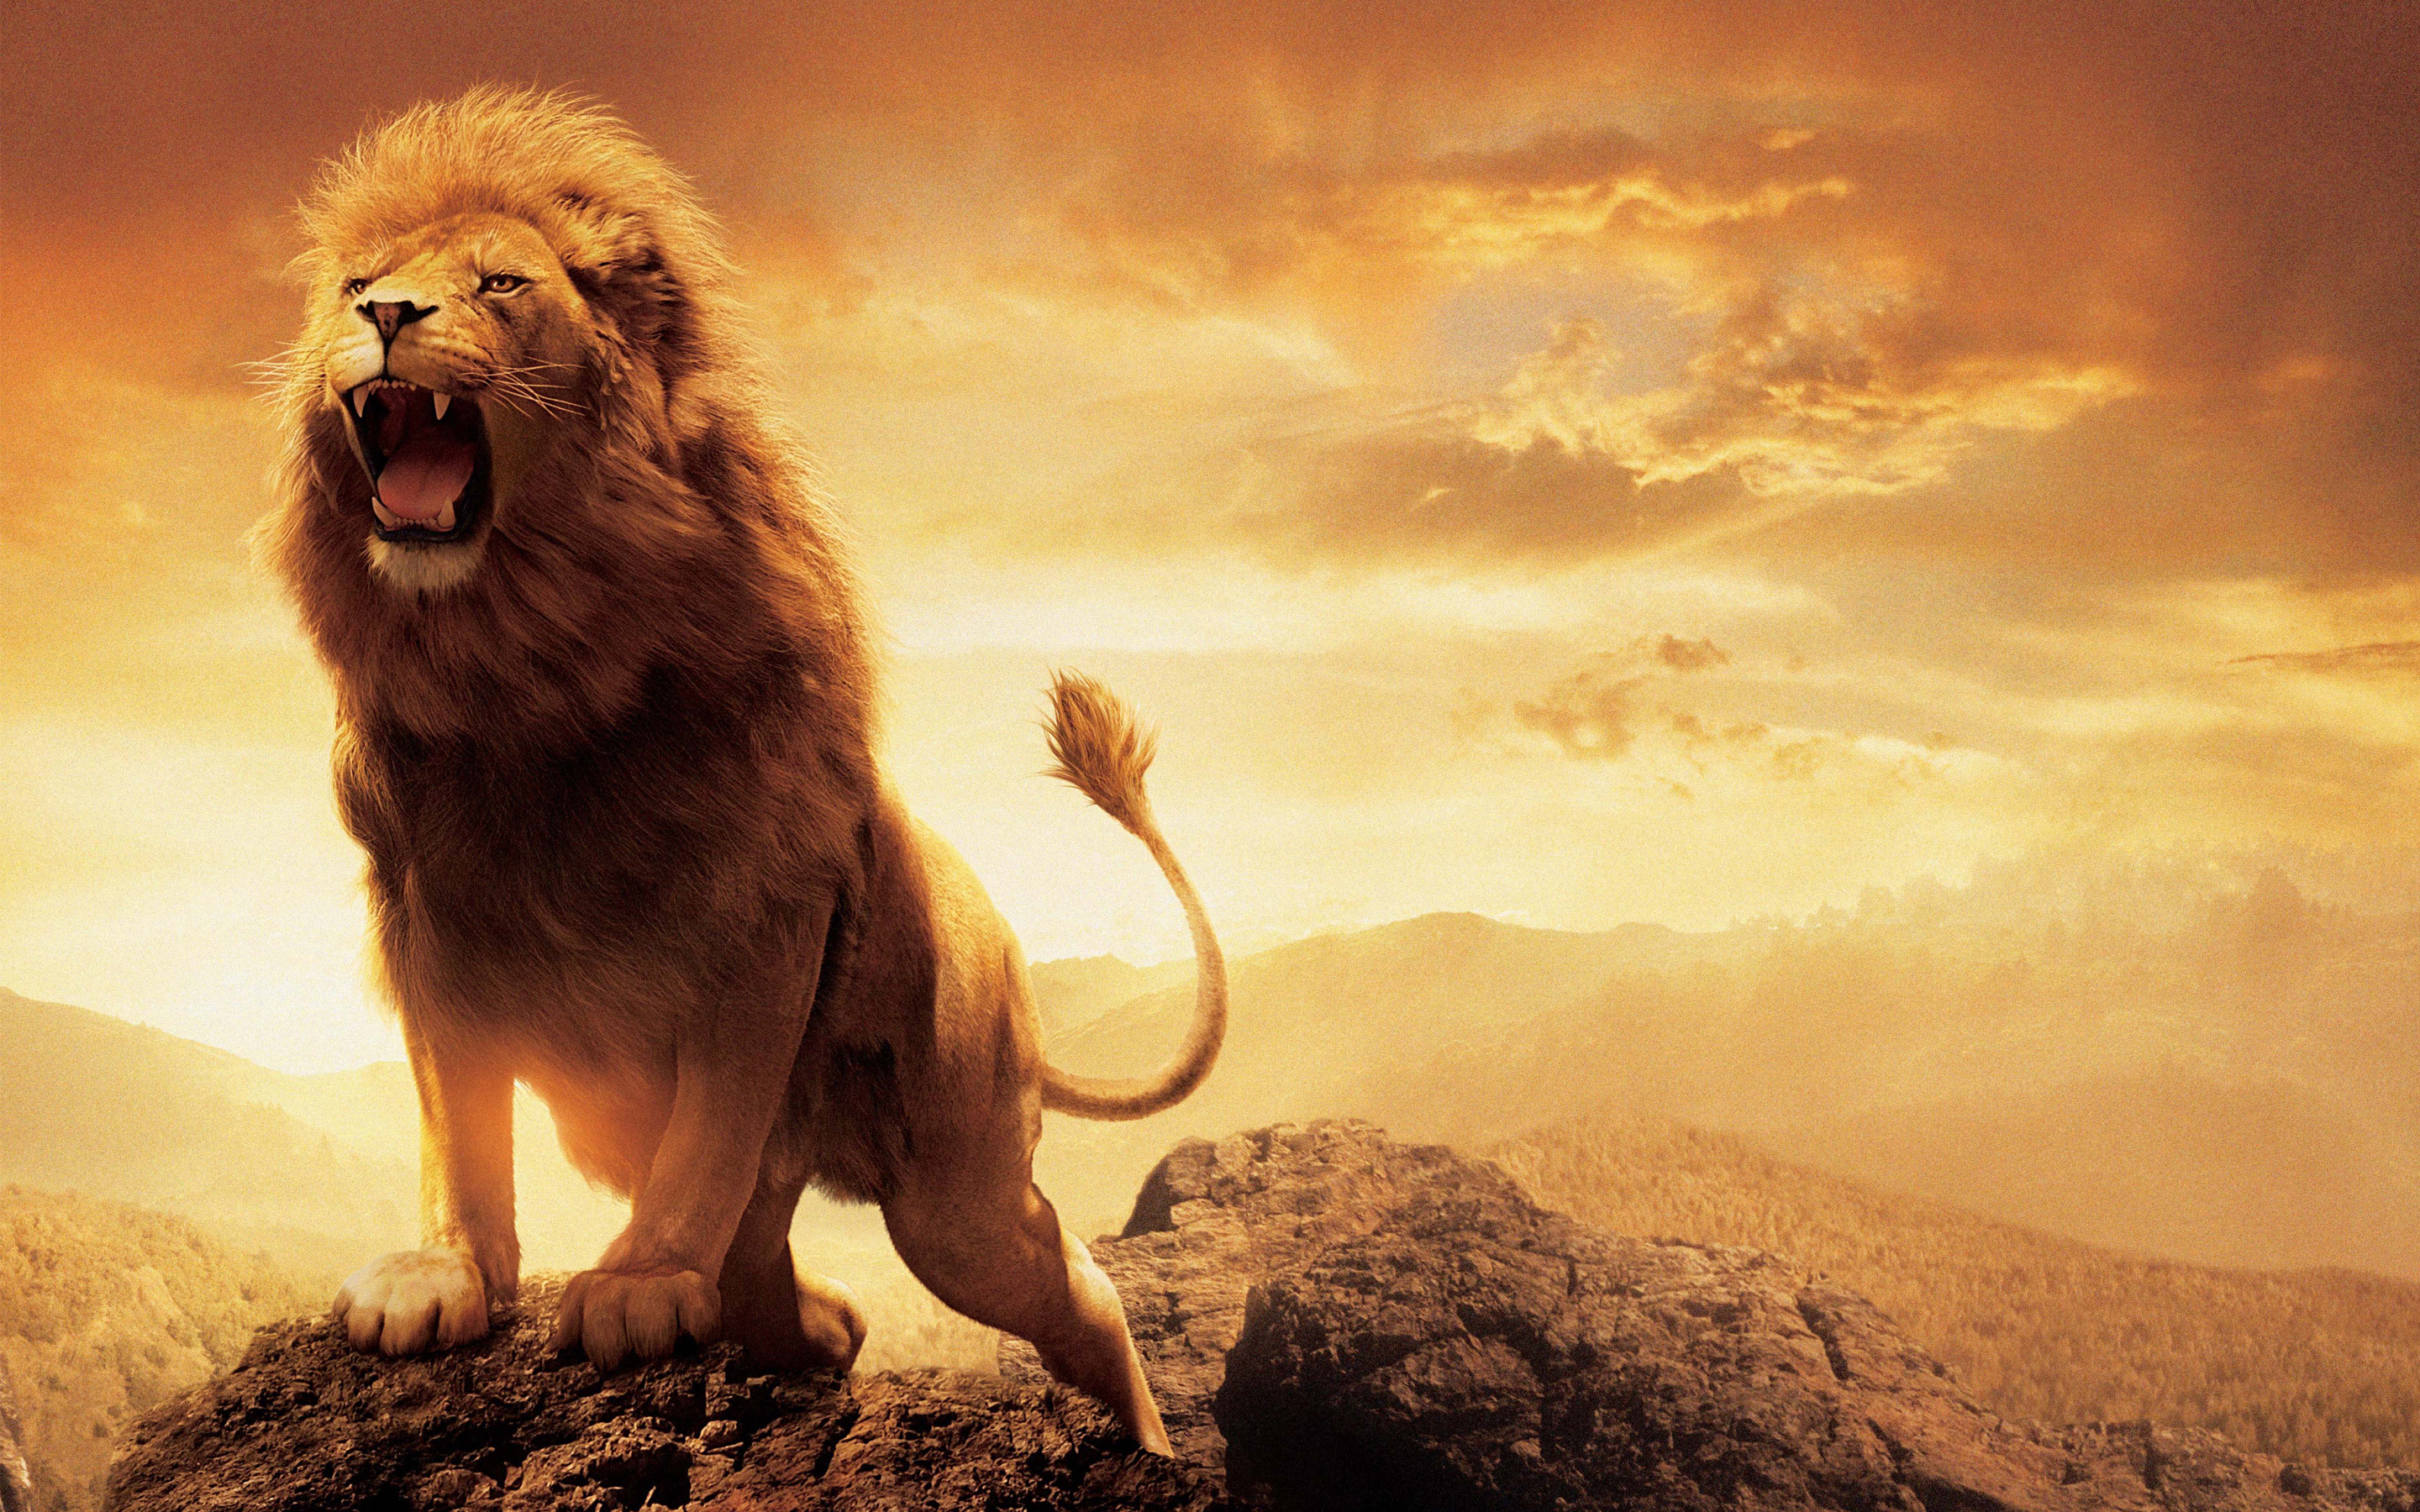 The Narnia Lion Aslan Wallpaper